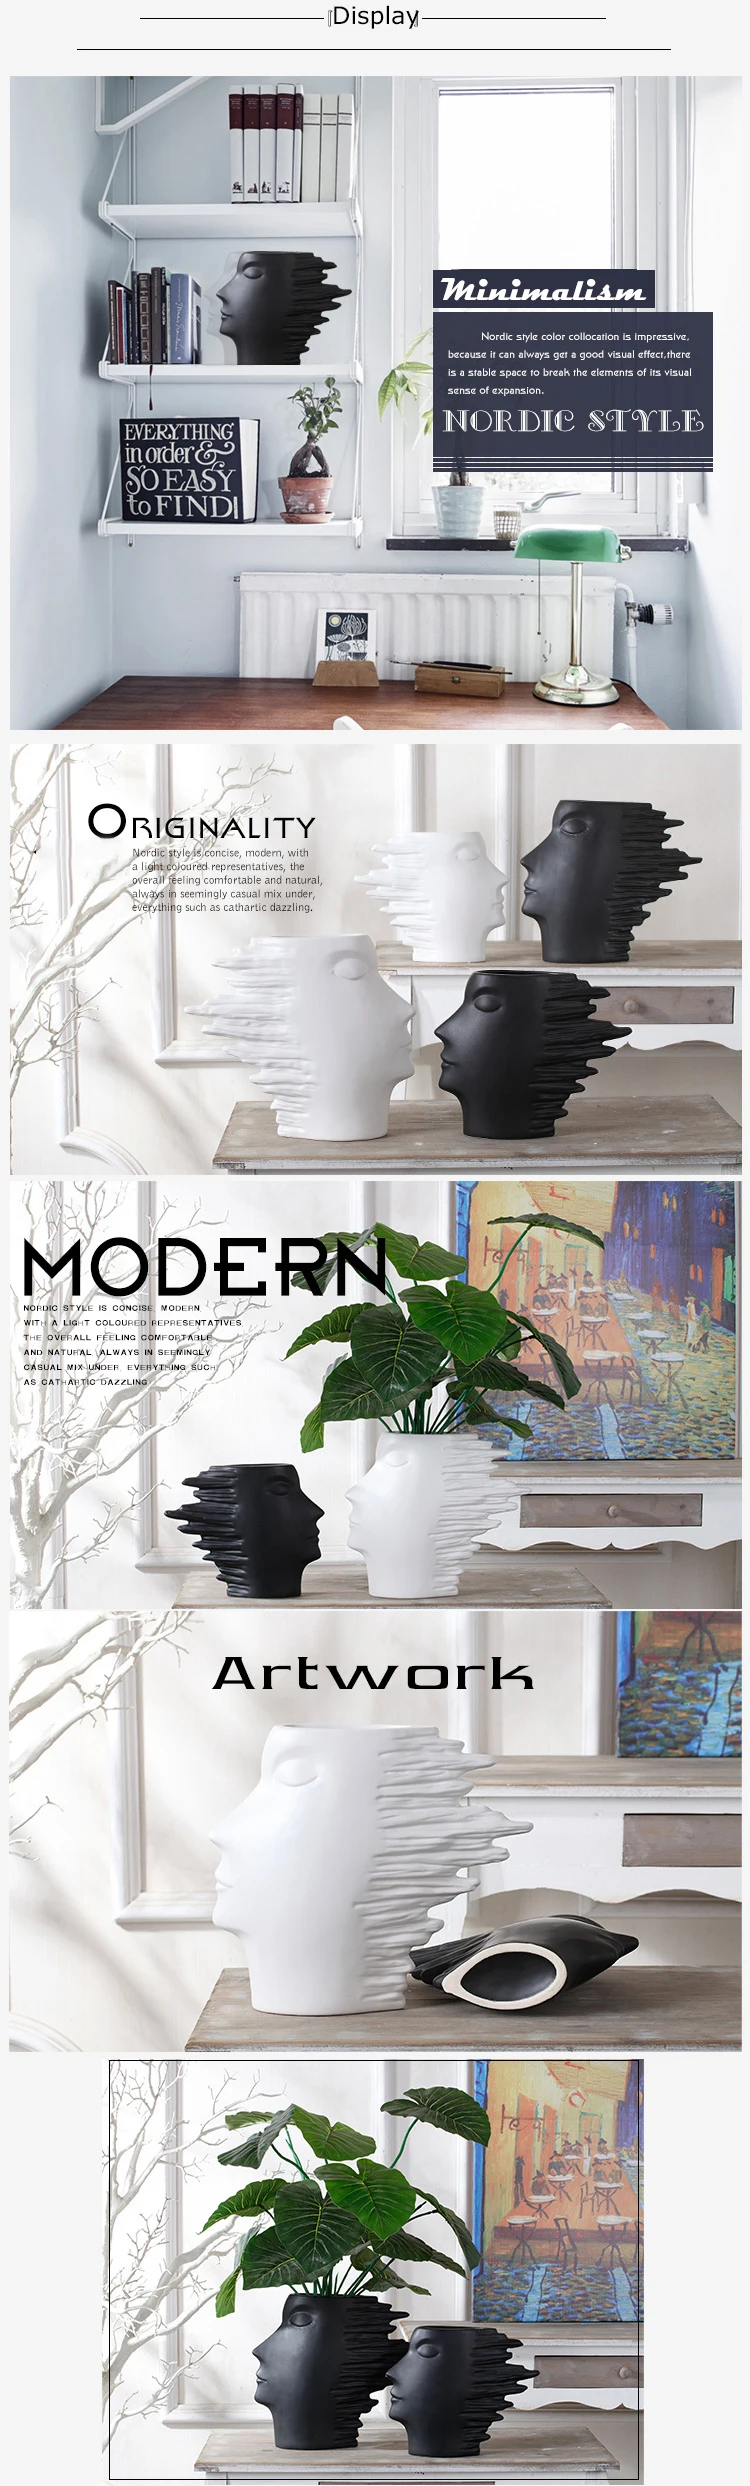 1 шт. минимализм абстрактная белая керамическая головка, модель вазы, статуэтки в скандинавском стиле, украшение для домашнего интерьера, керамические украшения